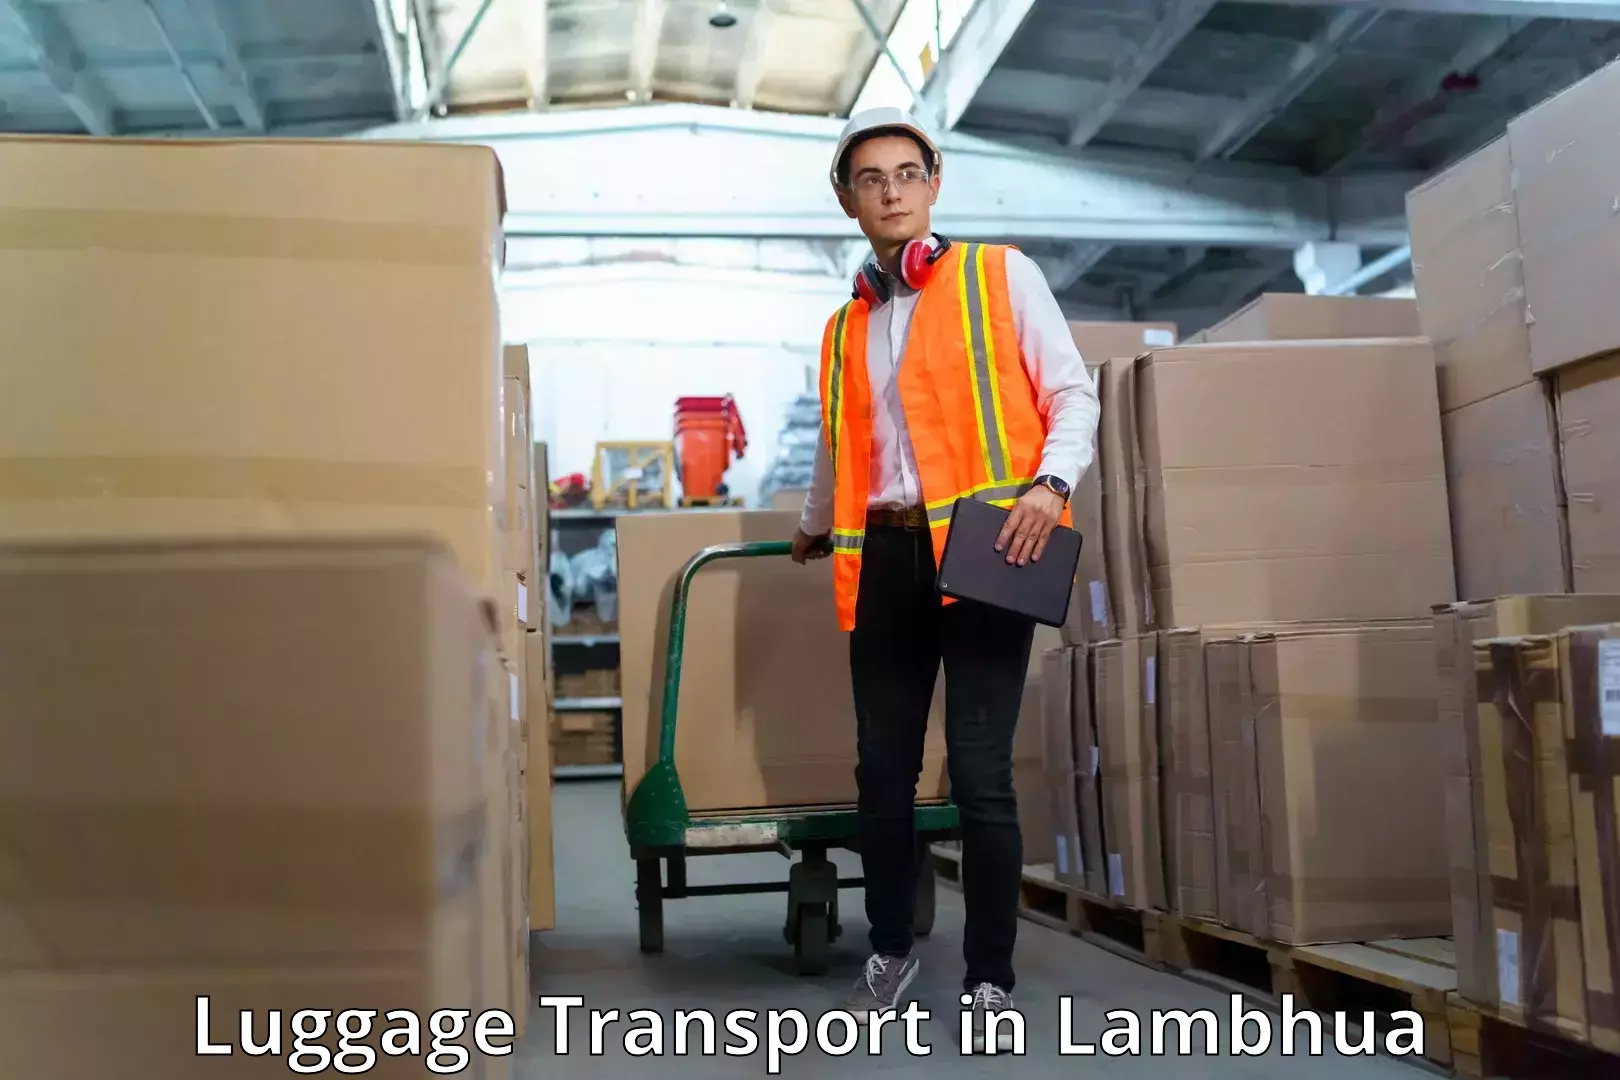 Luggage transport deals in Lambhua